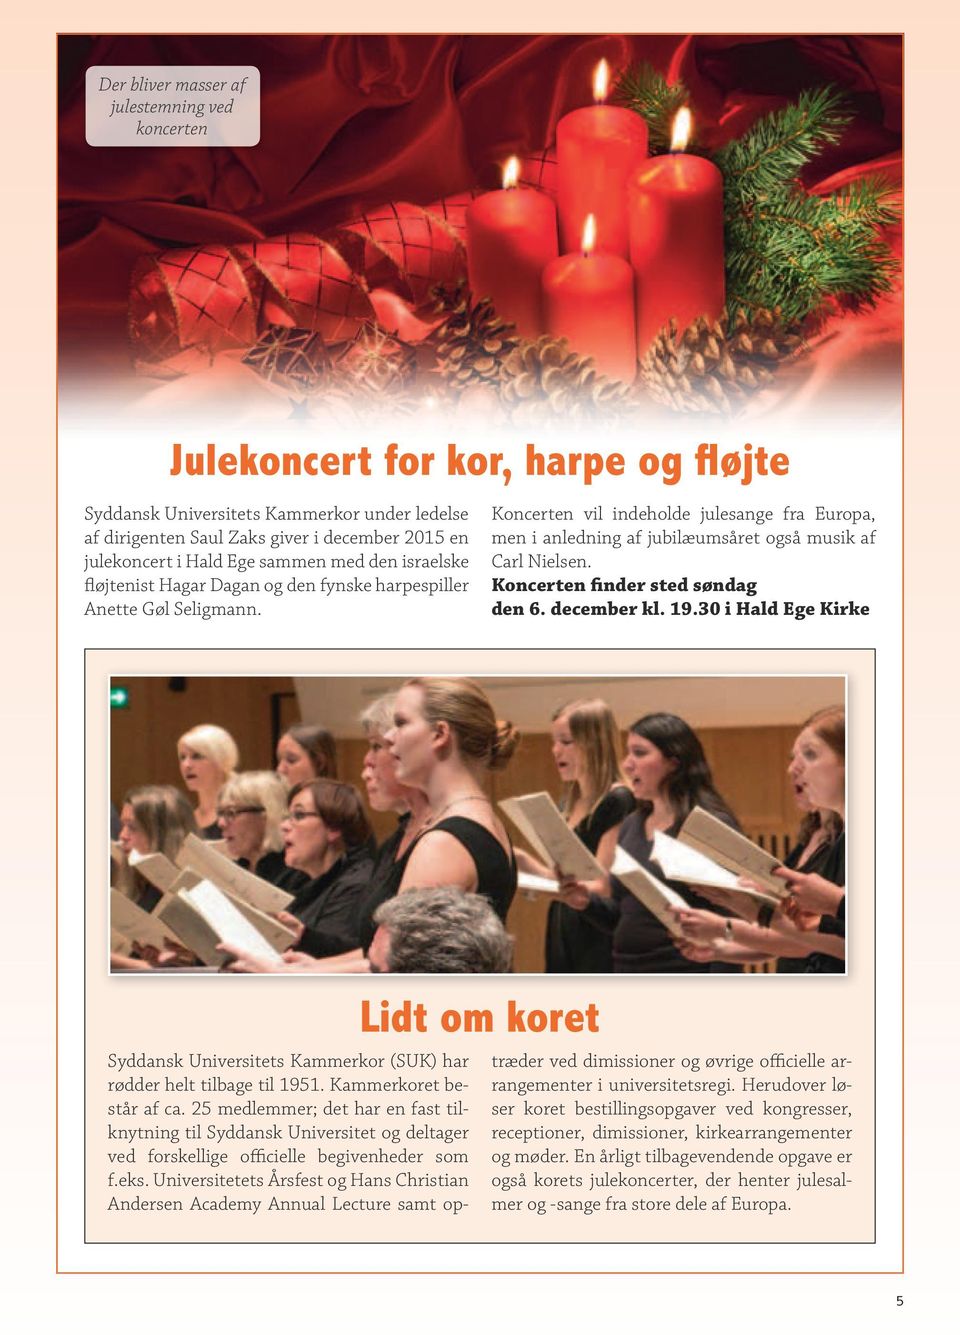 Koncerten vil indeholde julesange fra Europa, men i anledning af jubilæumsåret også musik af Carl Nielsen. Koncerten finder sted søndag den 6. december kl. 19.